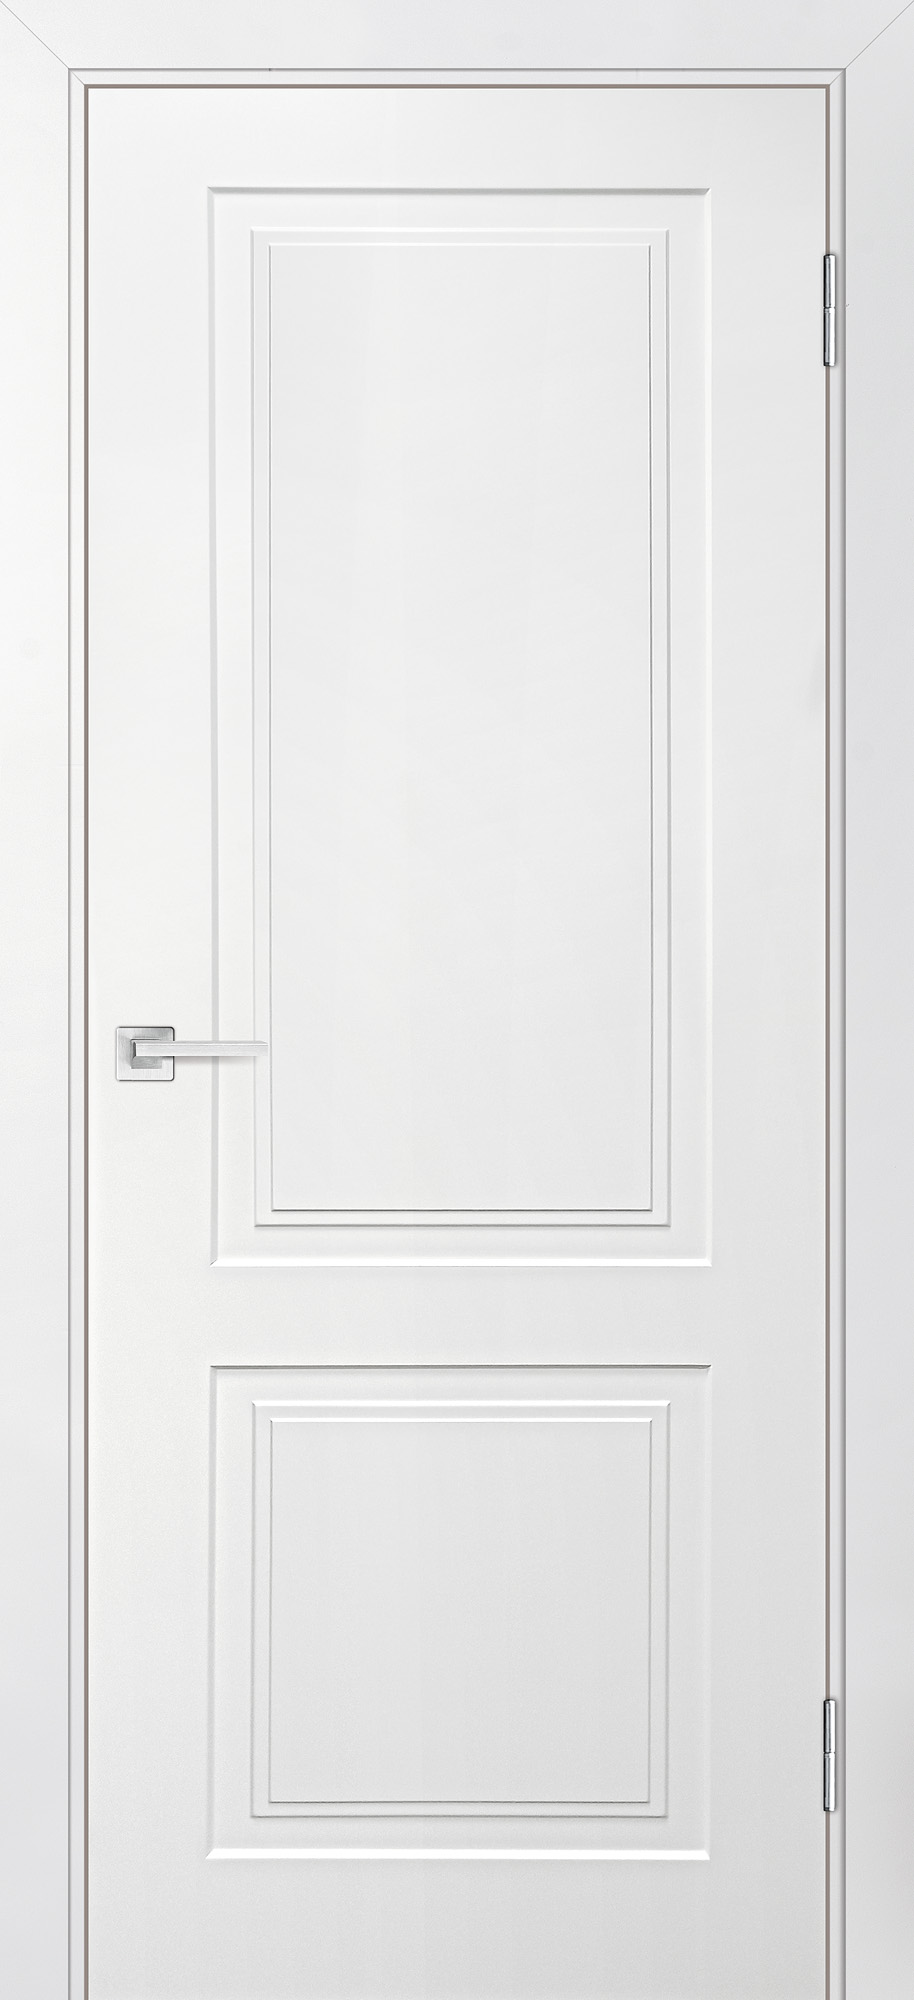 Двери крашеные (Эмаль) ТЕКОНА Смальта-Лайн 04 глухое Белый ral 9003 размер 200 х 70 см. артикул F0000083712